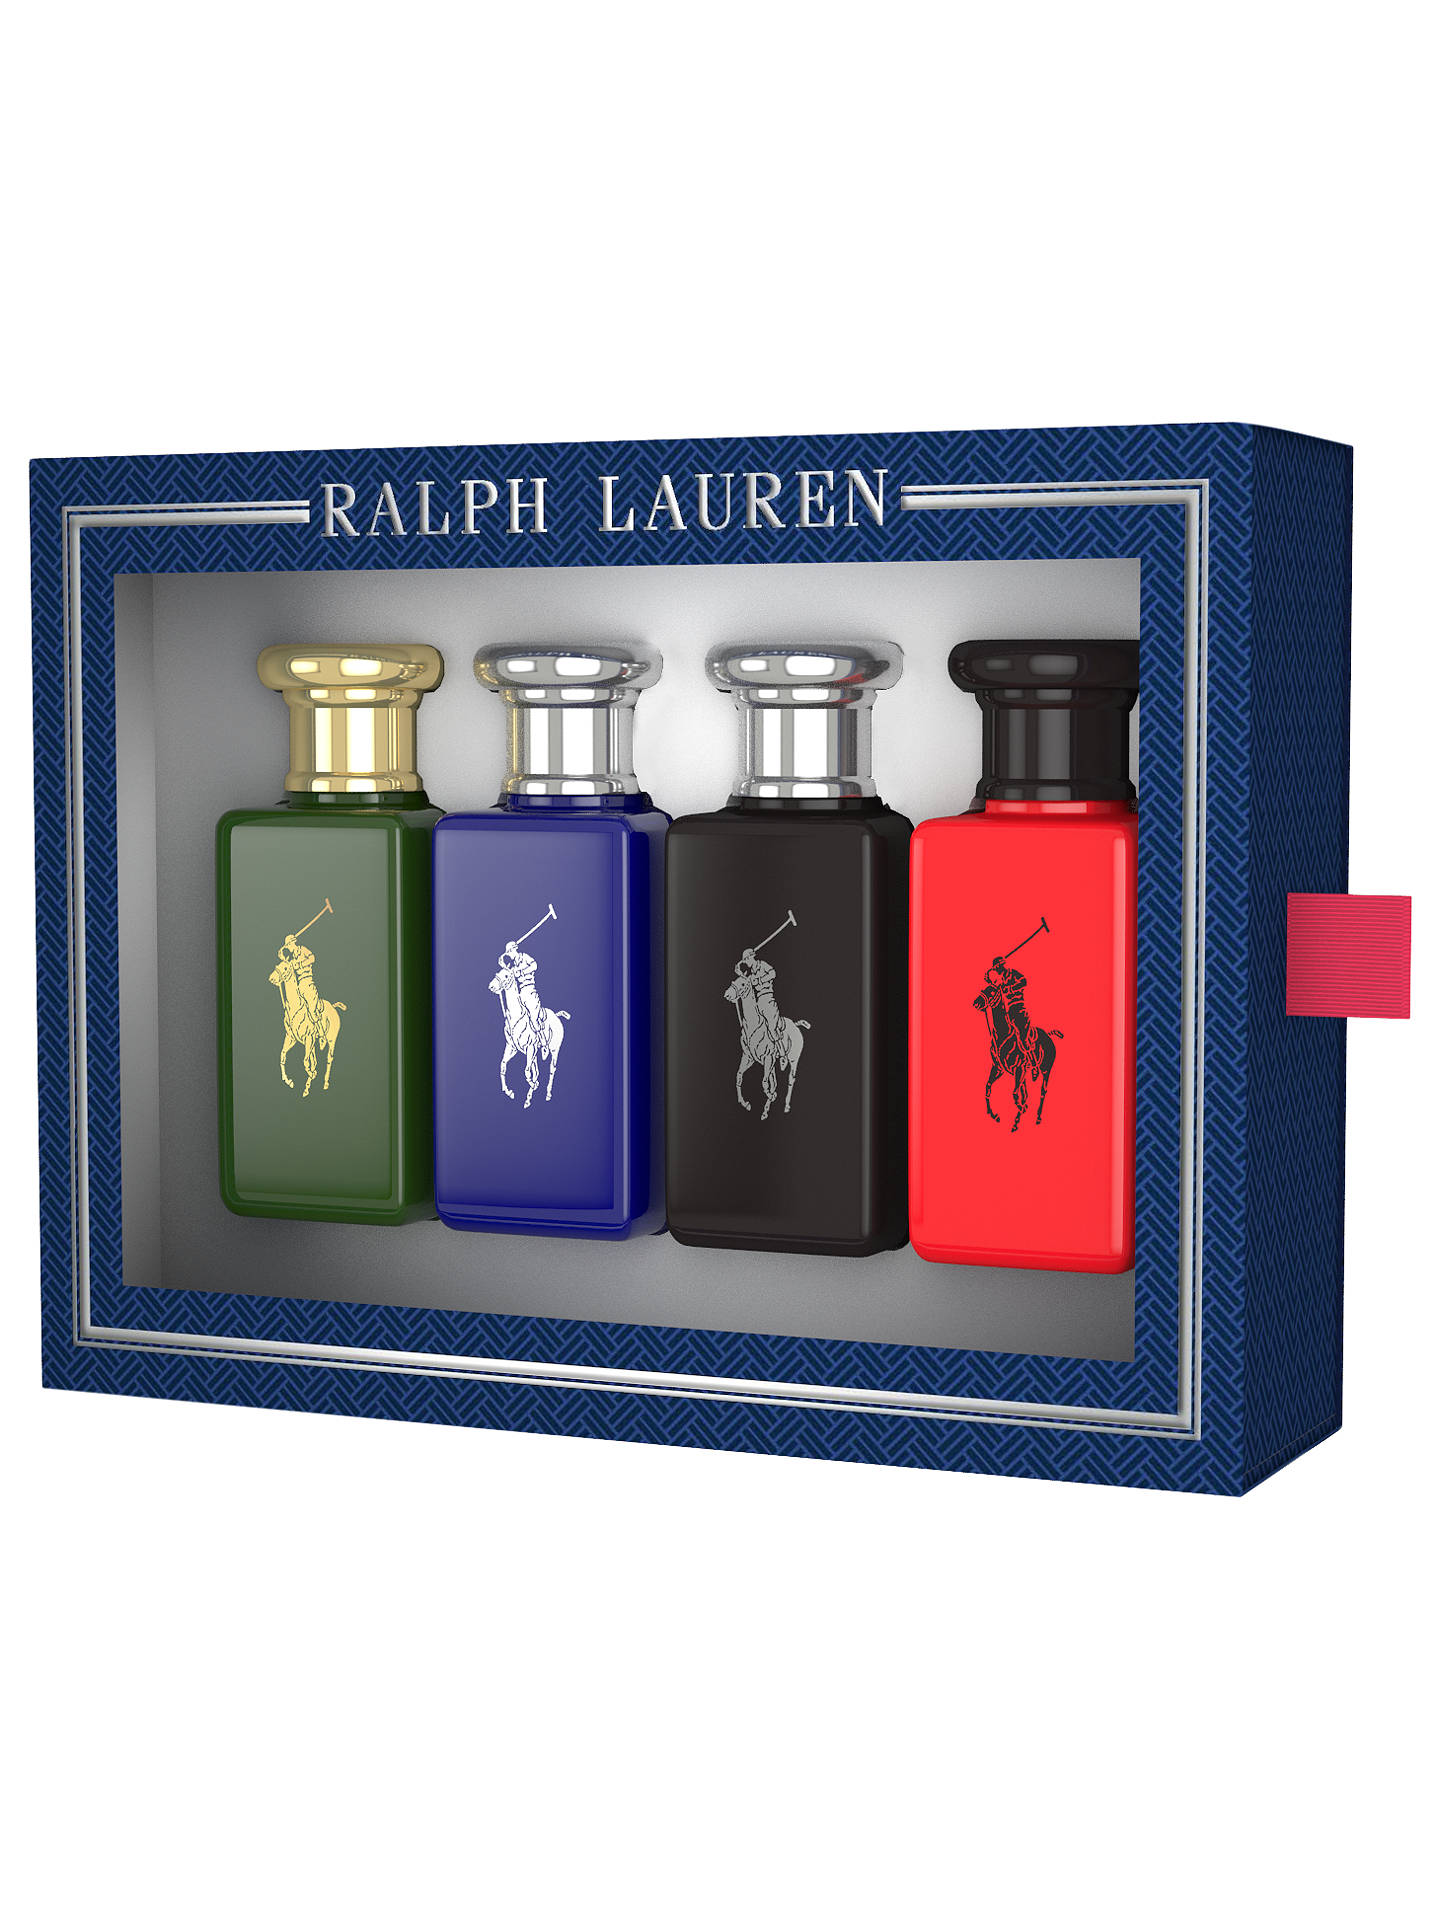 Ralph Lauren Polo 30ml Eau De Toilette Fragrance Gift Set At    